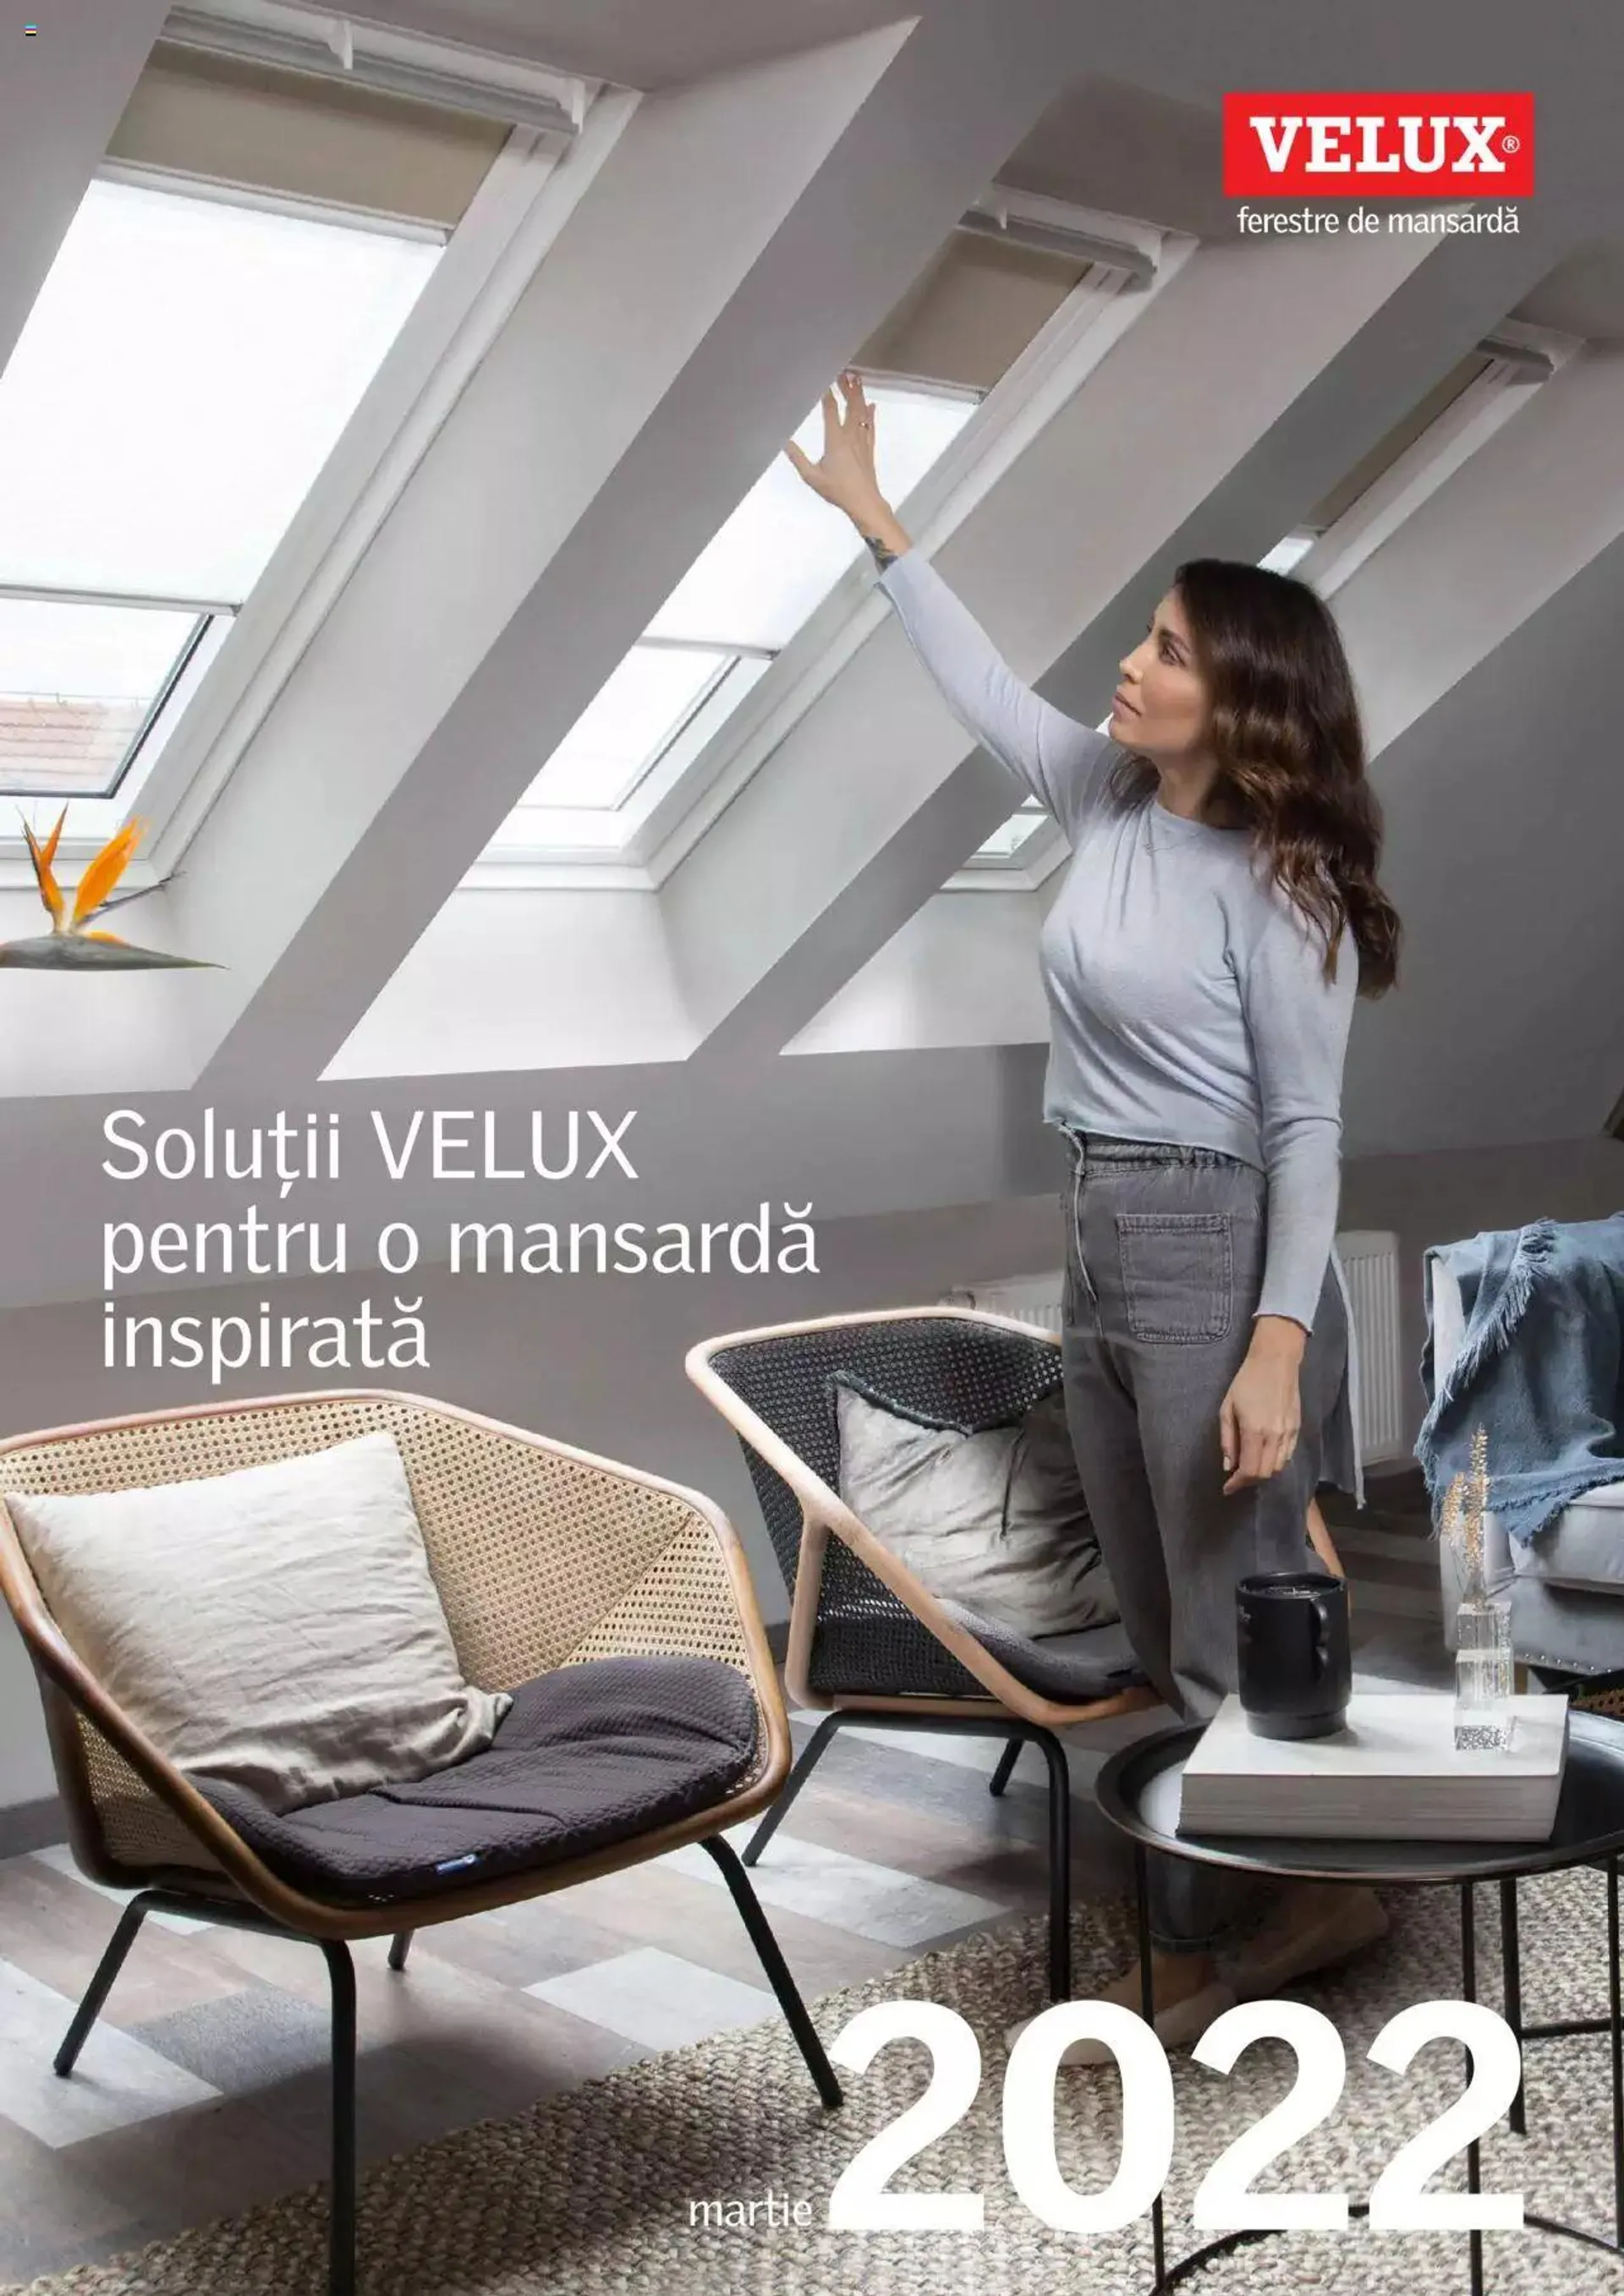 Velux - Soluții VELUX pentru o mansardă inspirată 2022 - 0